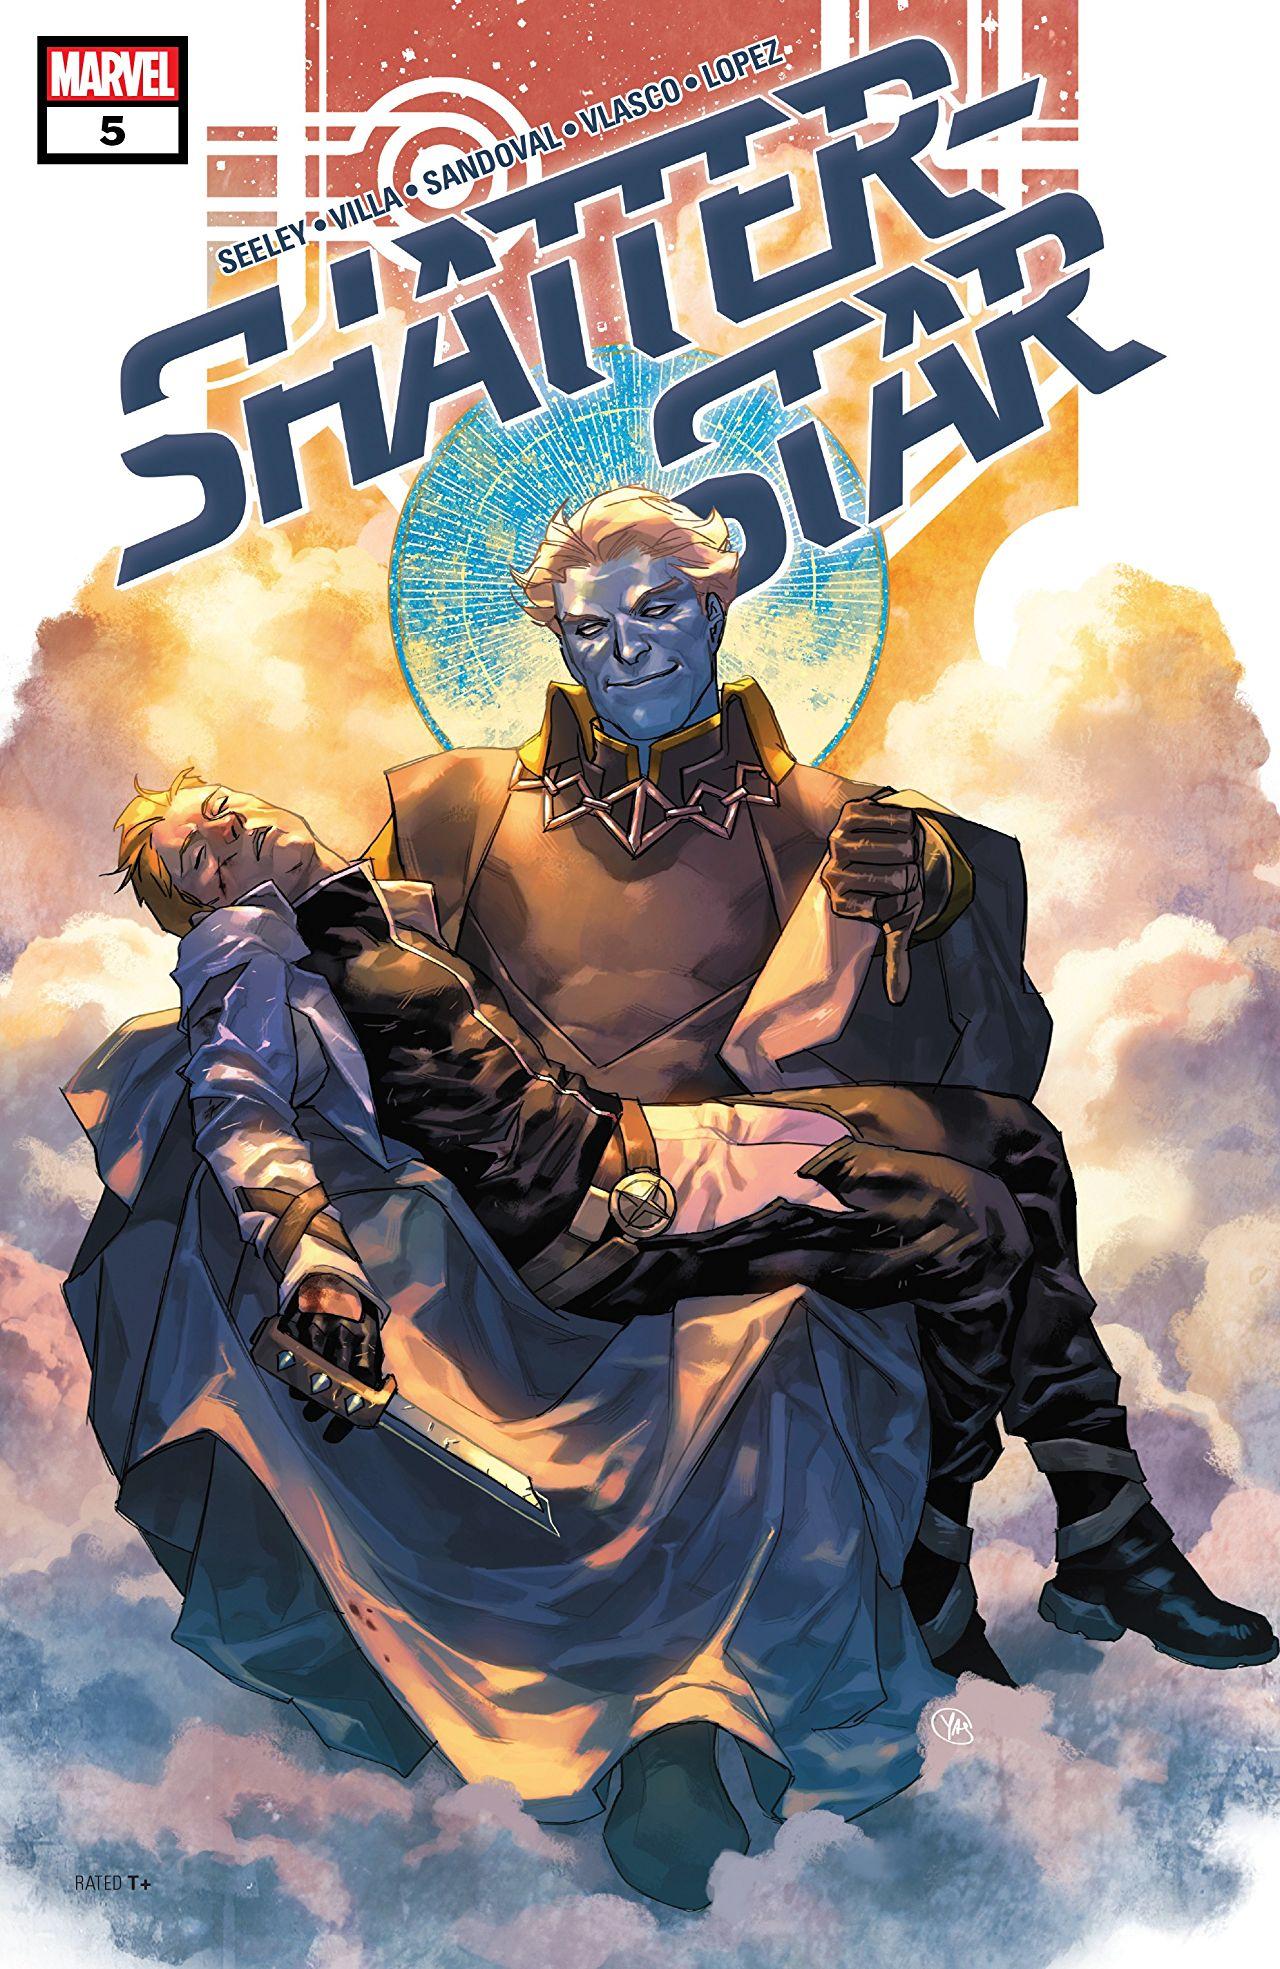 Shatterstar Vol. 1 #5